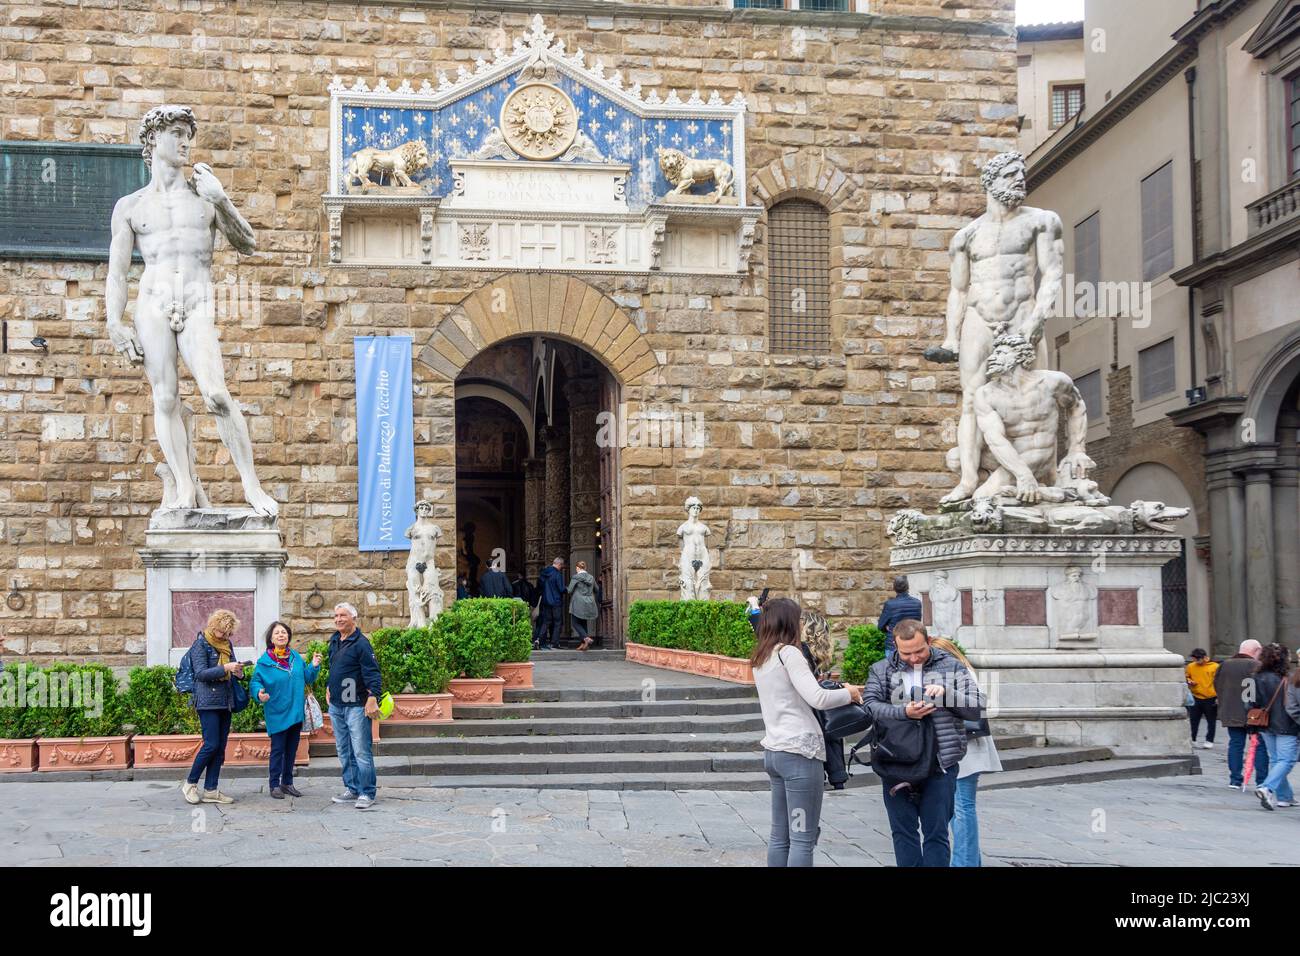 Statua del David all'ingresso di Palazzo Vecchio, Piazza della Signoria, Firenze, Toscana, Italia Foto Stock